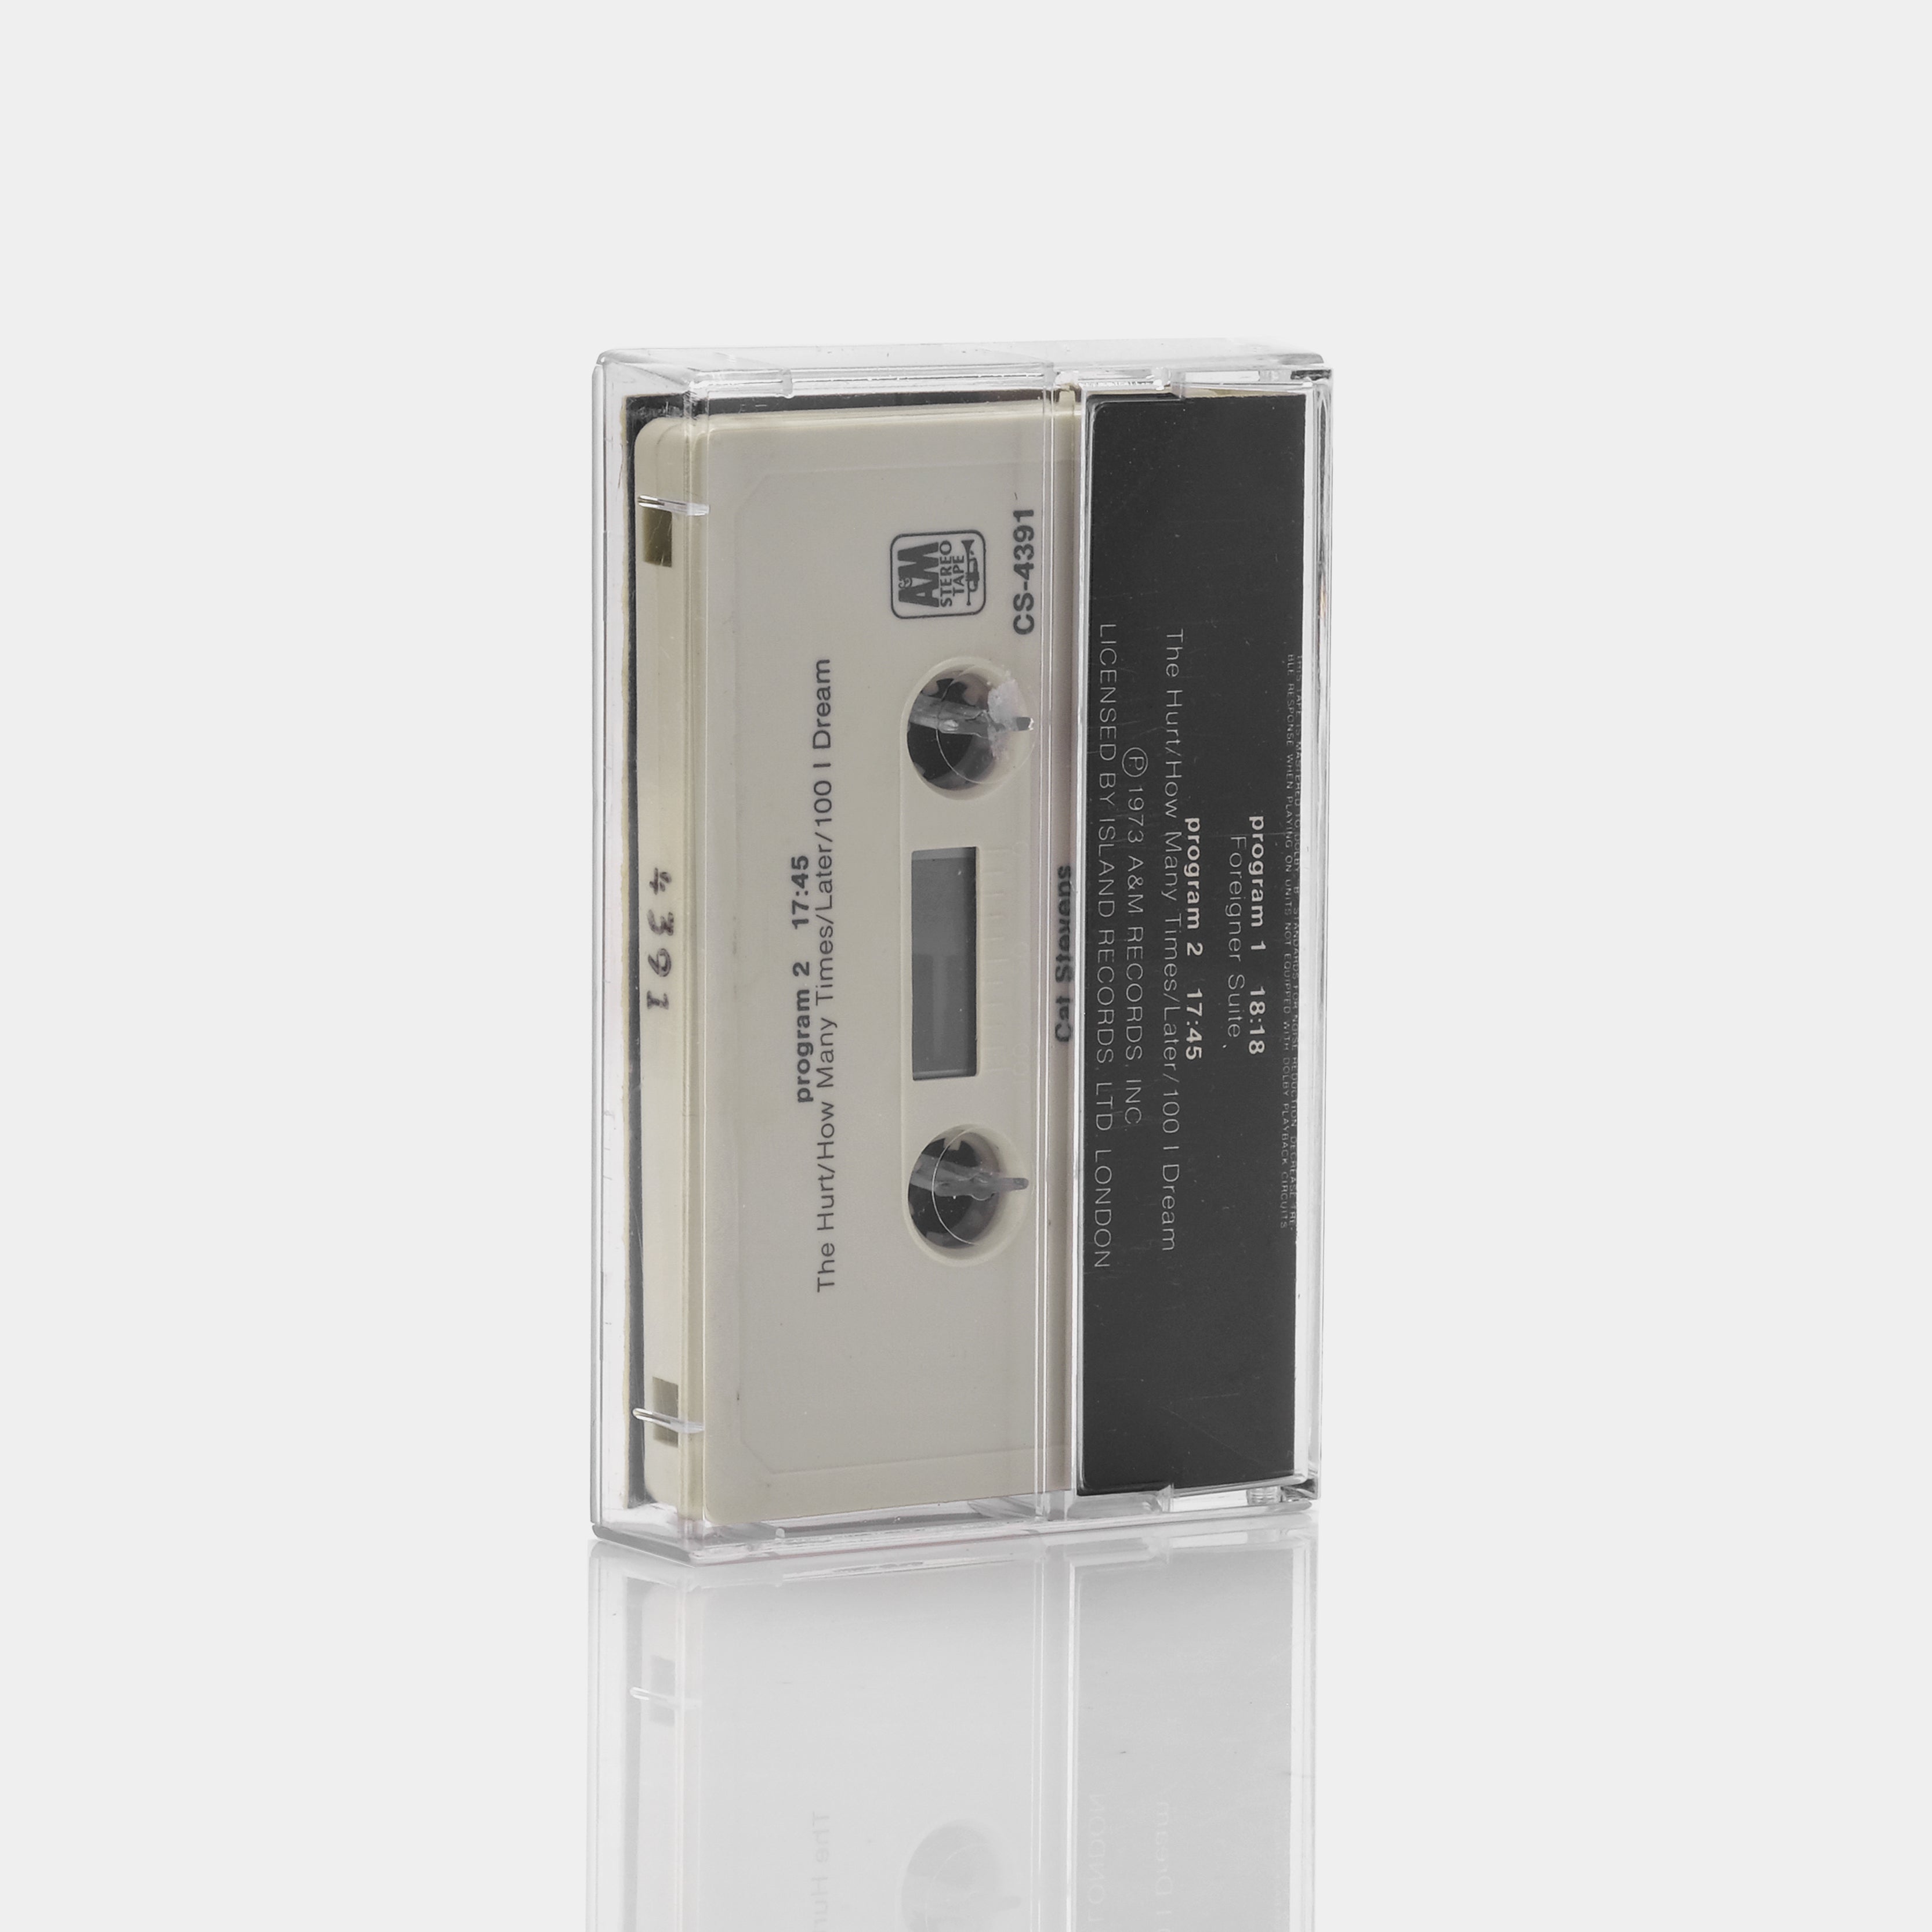 Cat Stevens - Foreigner Cassette Tape